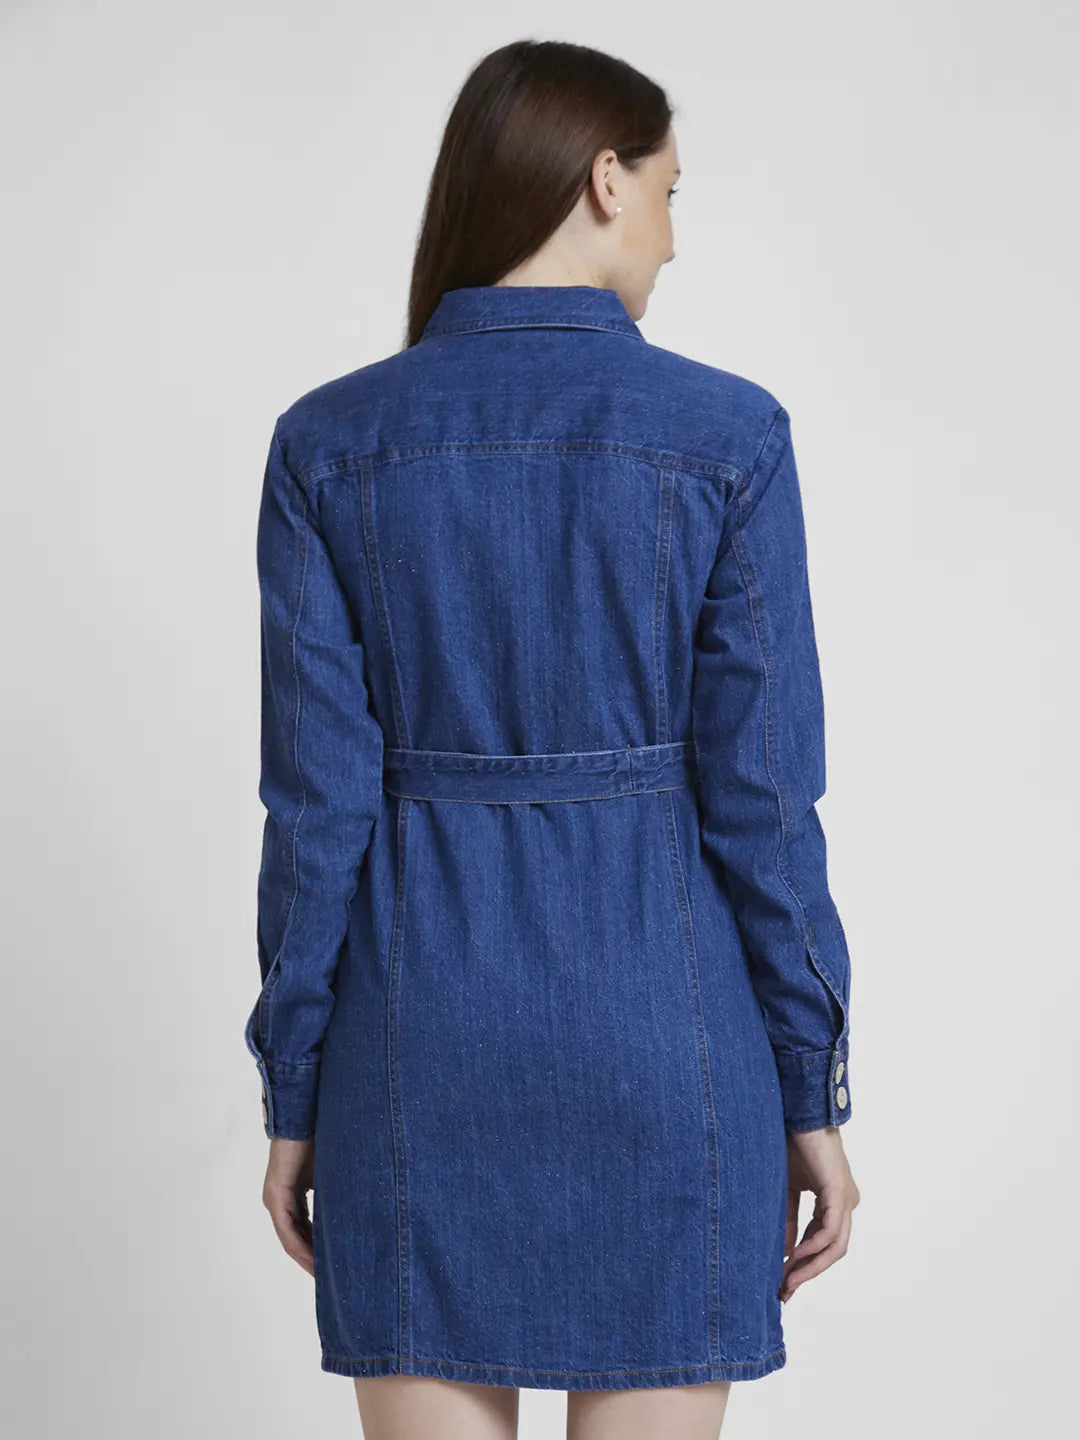 Spykar Women Mid Blue Cotton Regular Fit Classic Collar Knee Length Denim Dress